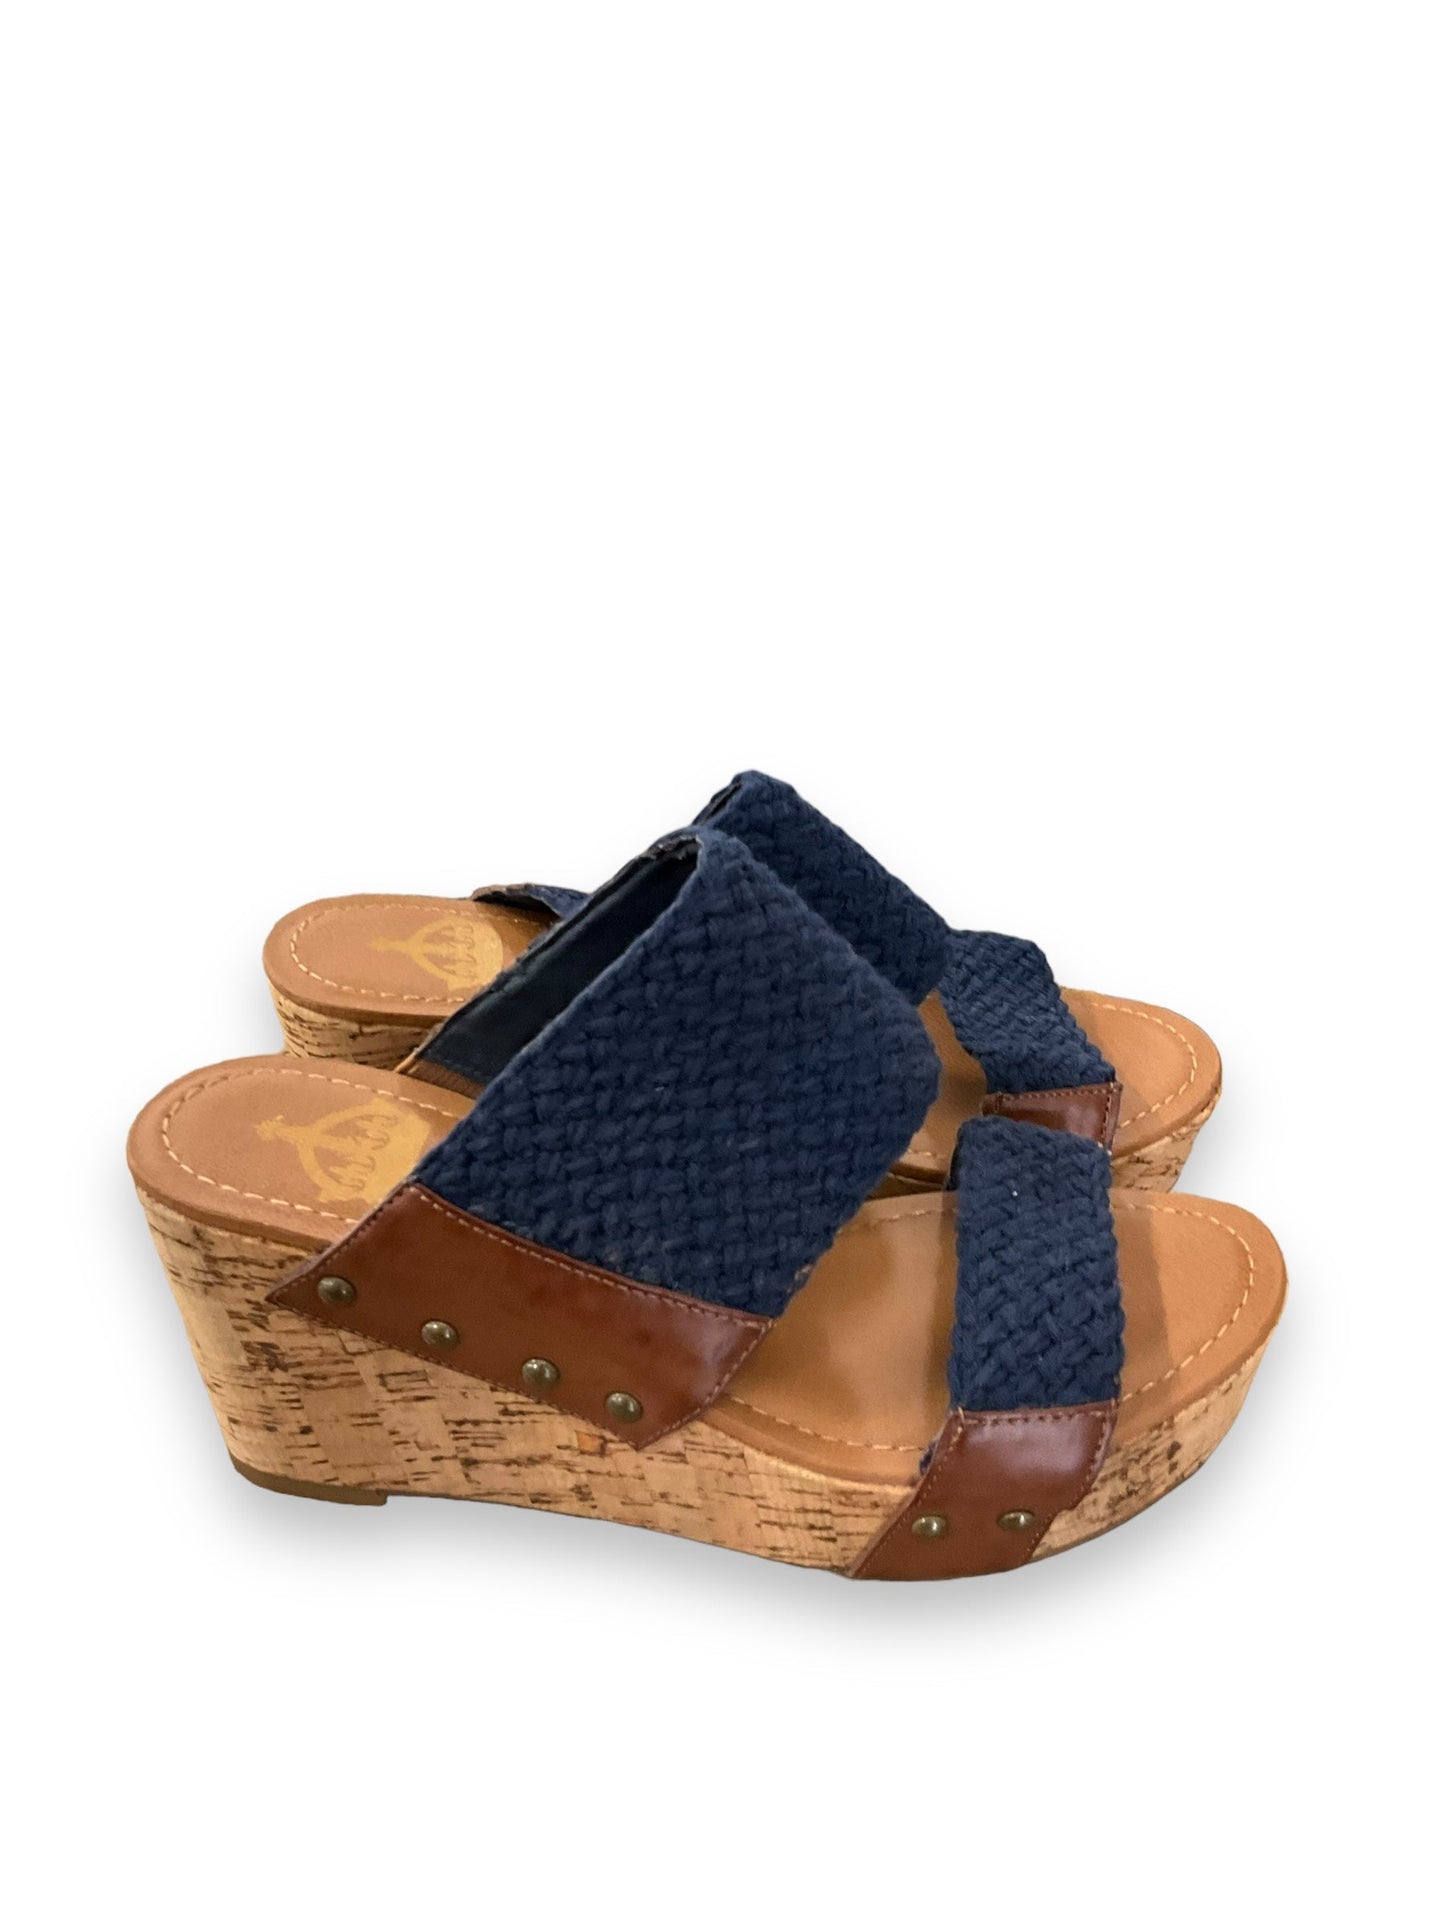 Blue & Brown Sandals Heels Wedge Crown Vintage, Size 6